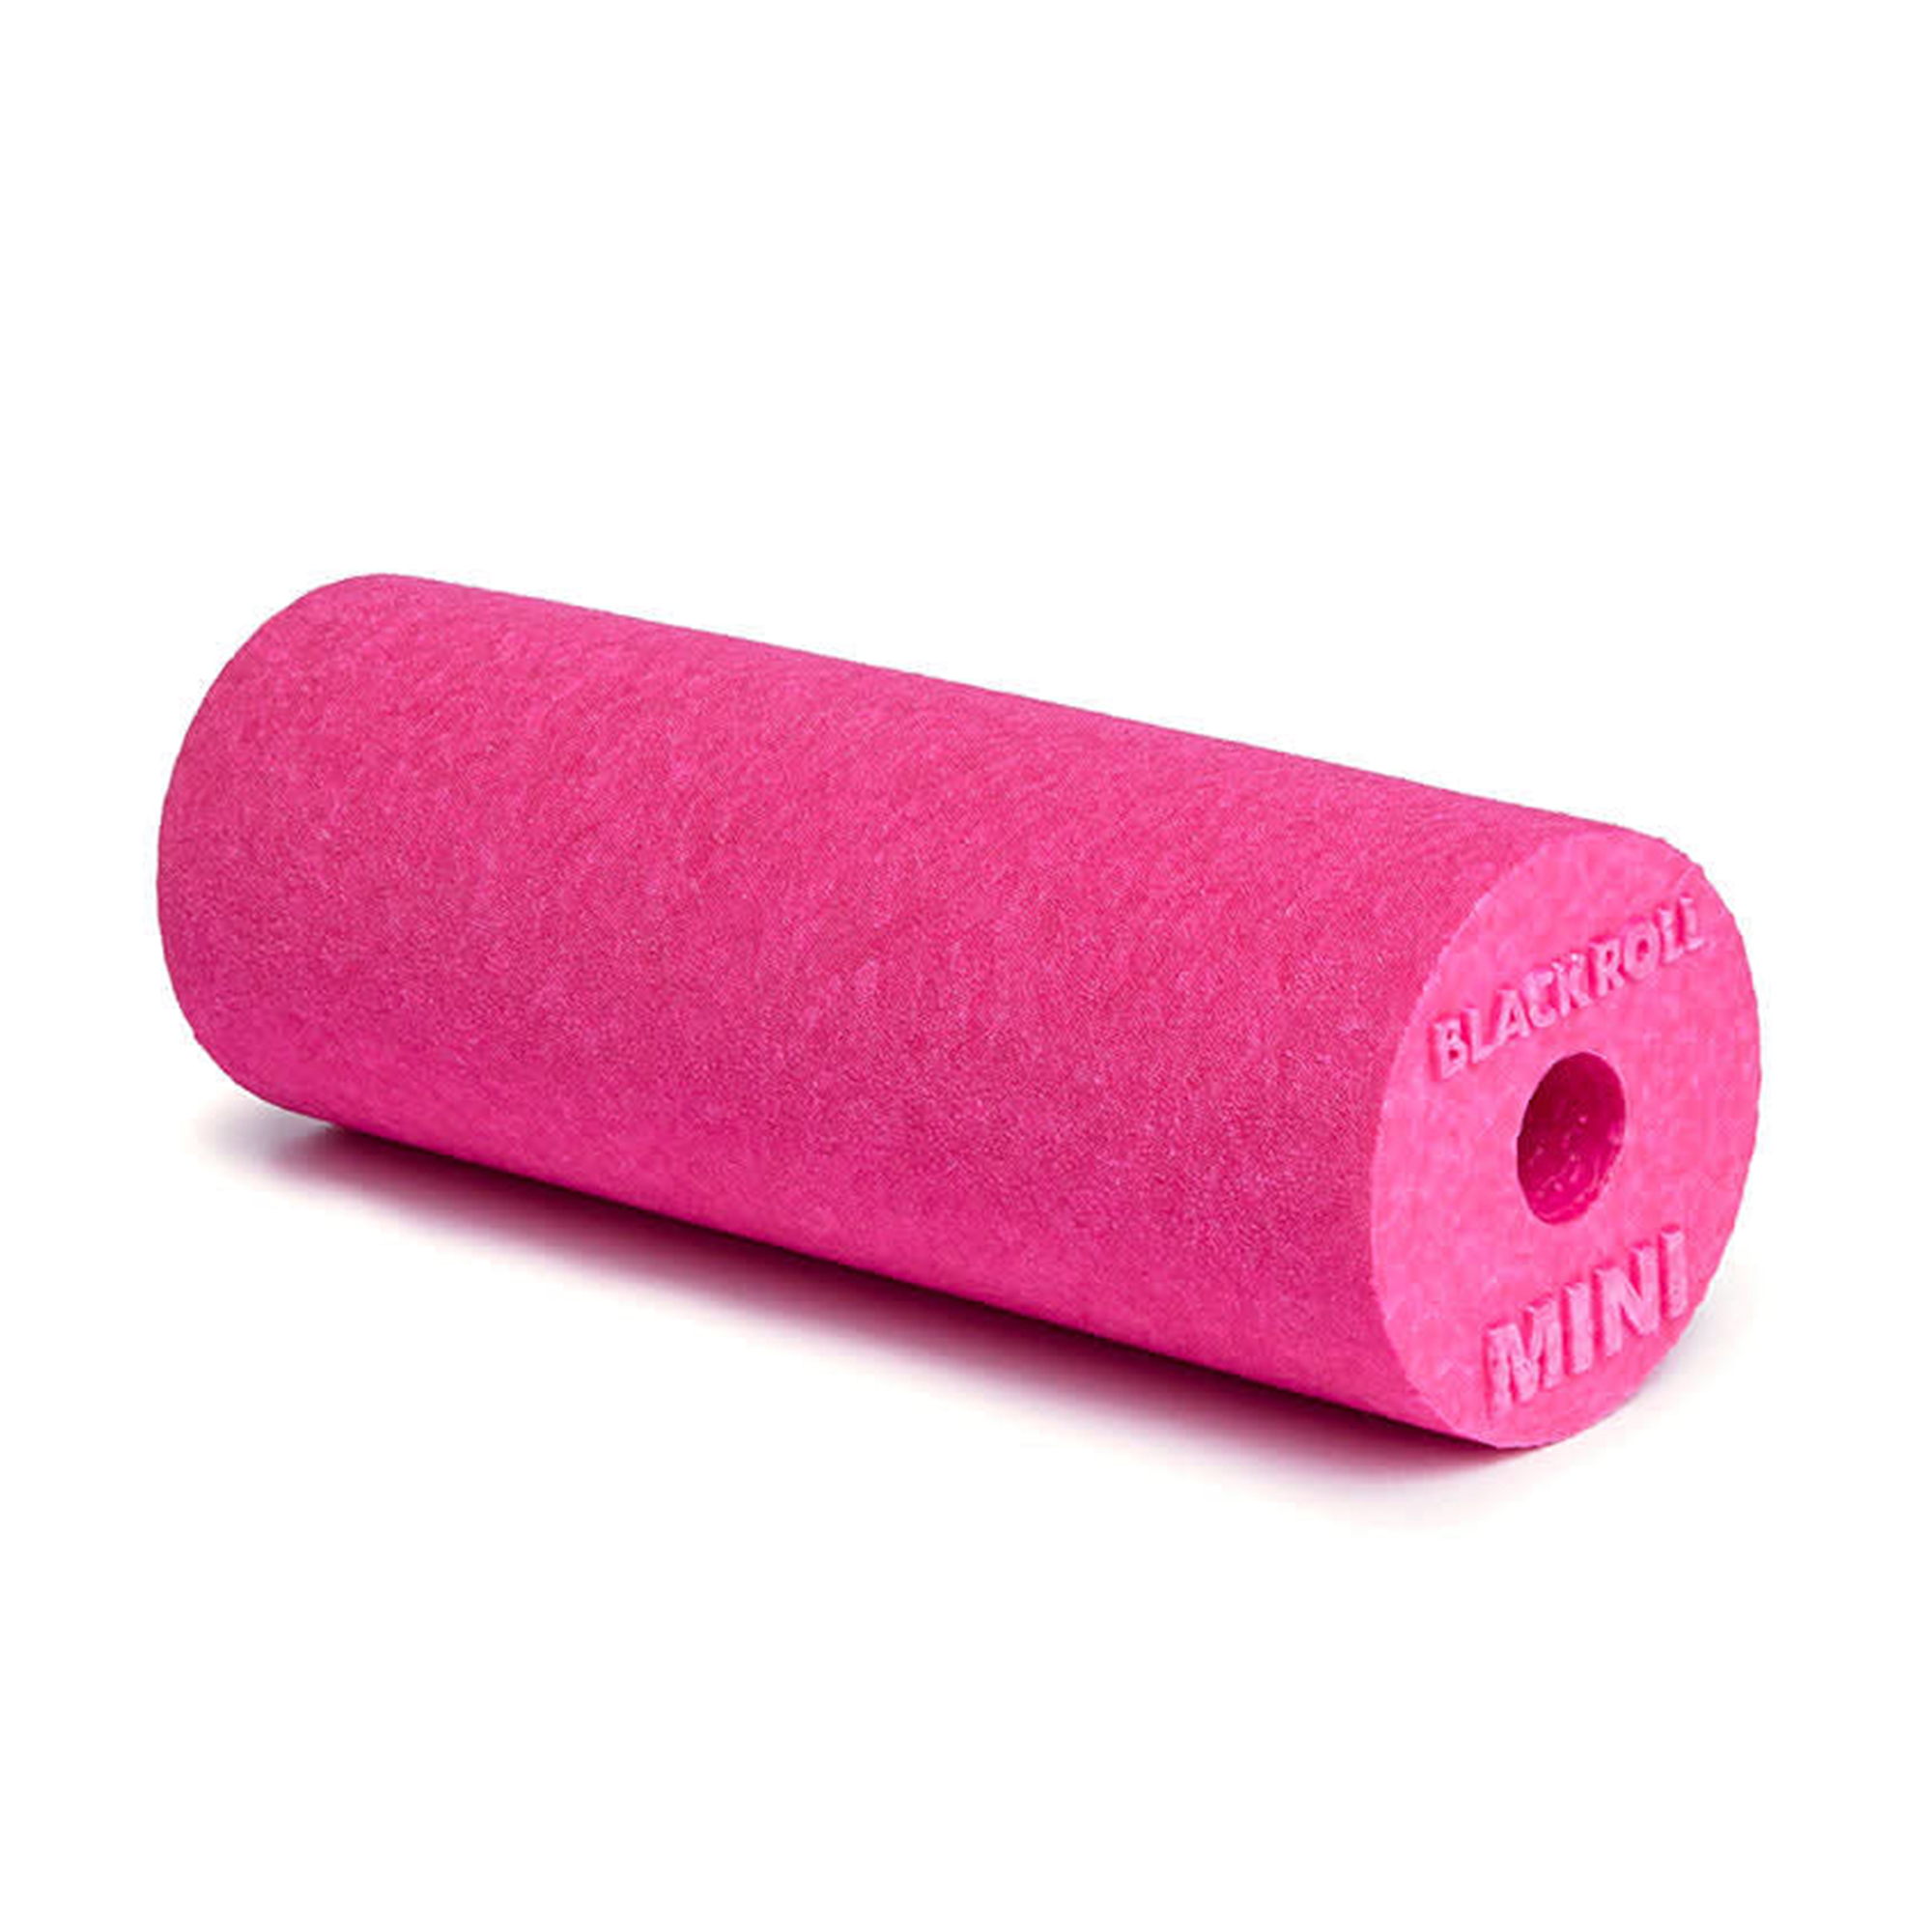 Blackroll Mini Foam Roller Pink - 15 x 6 cm thumbnail